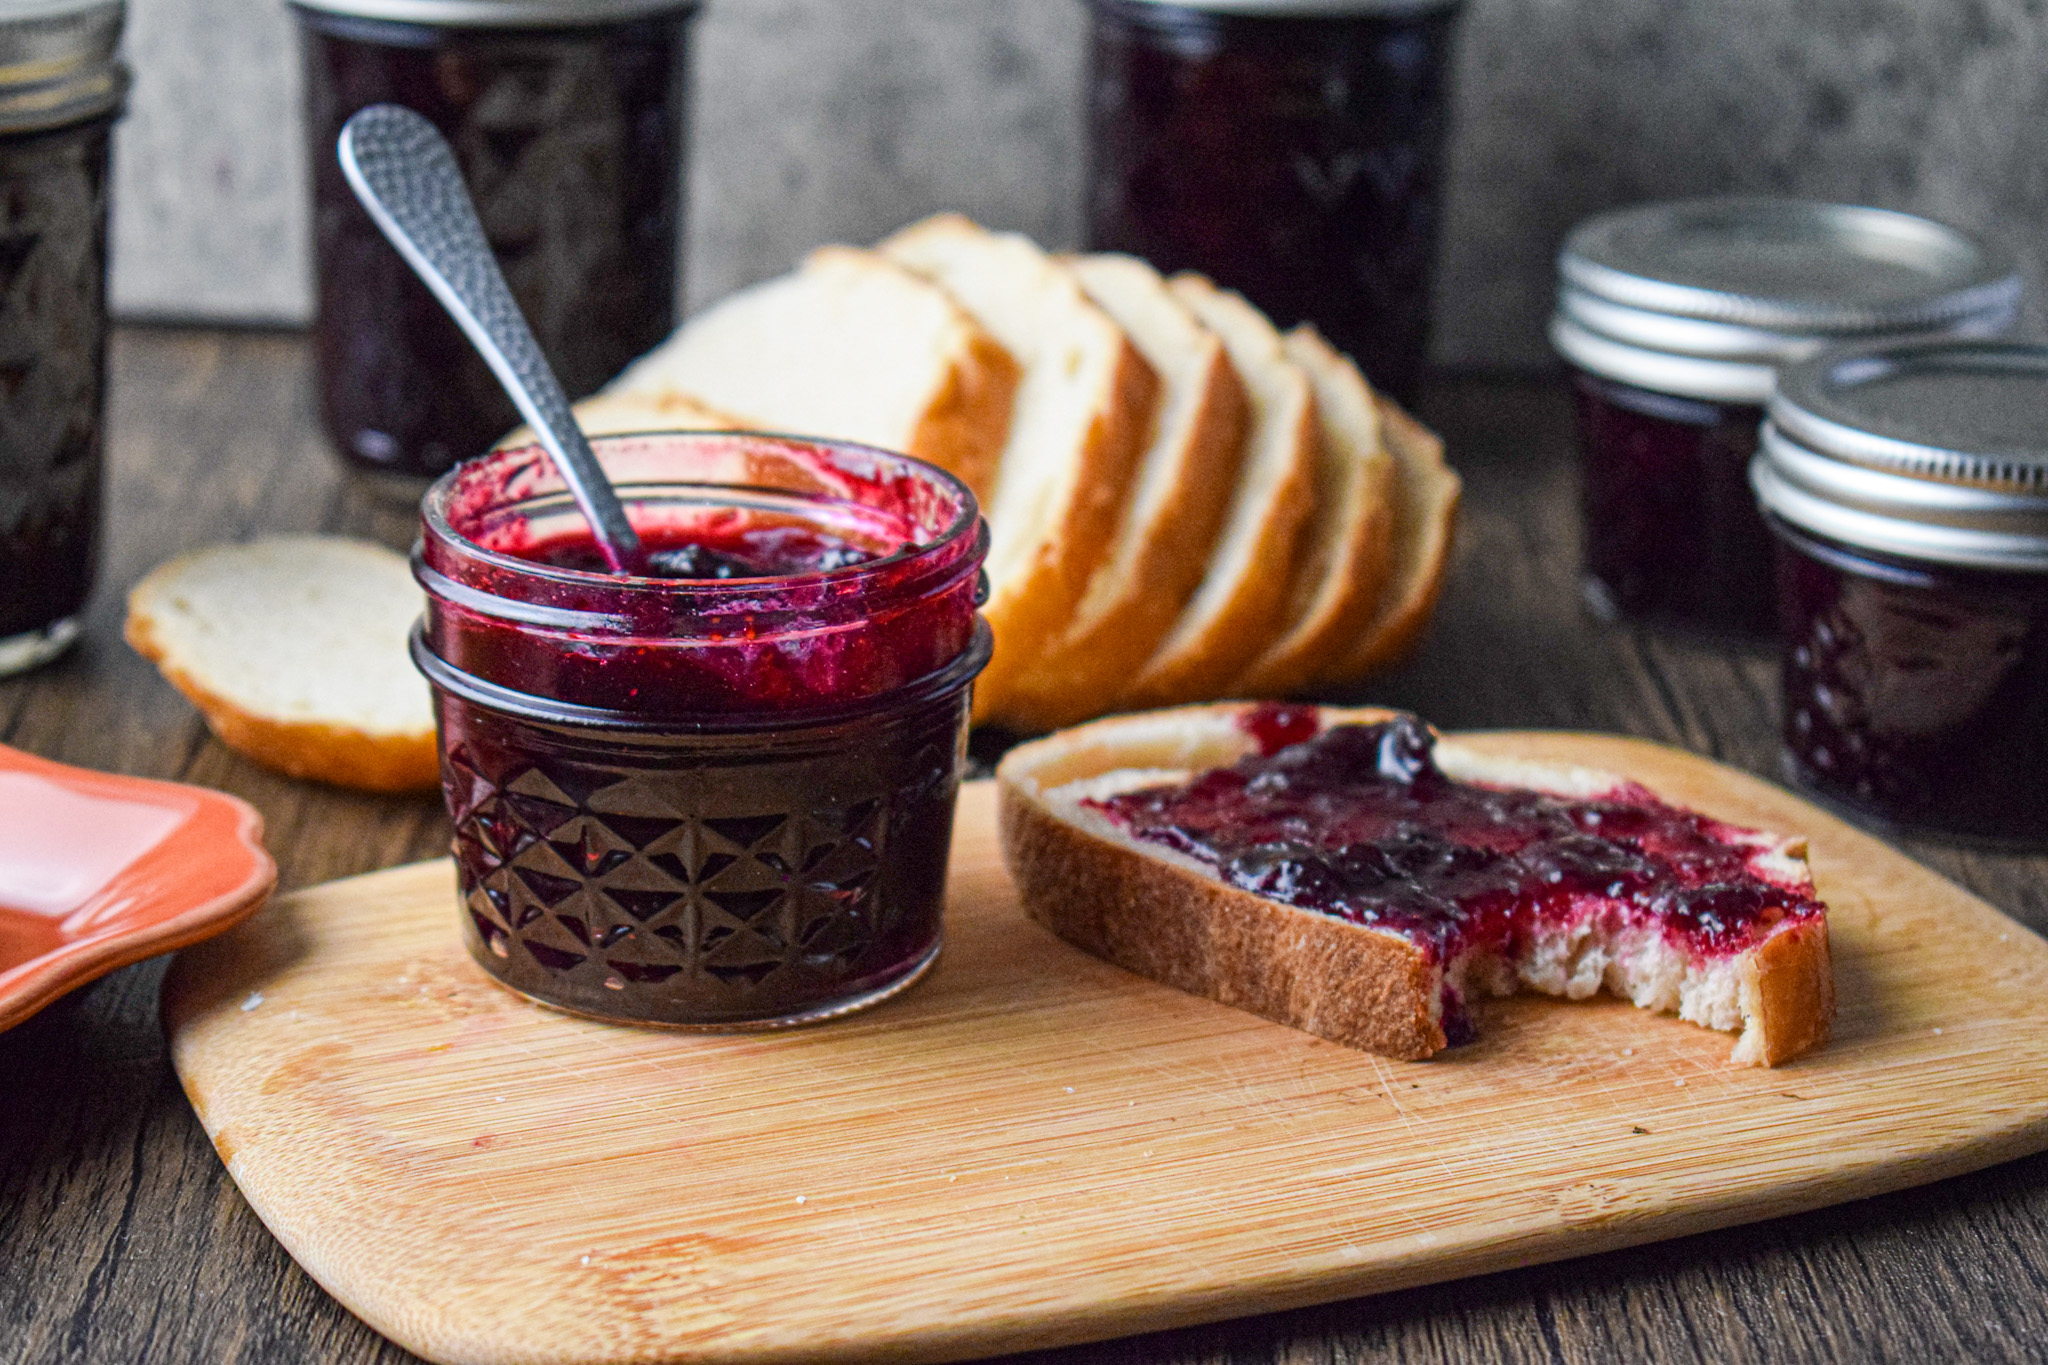 rhubarb blueberry jam on toast bread